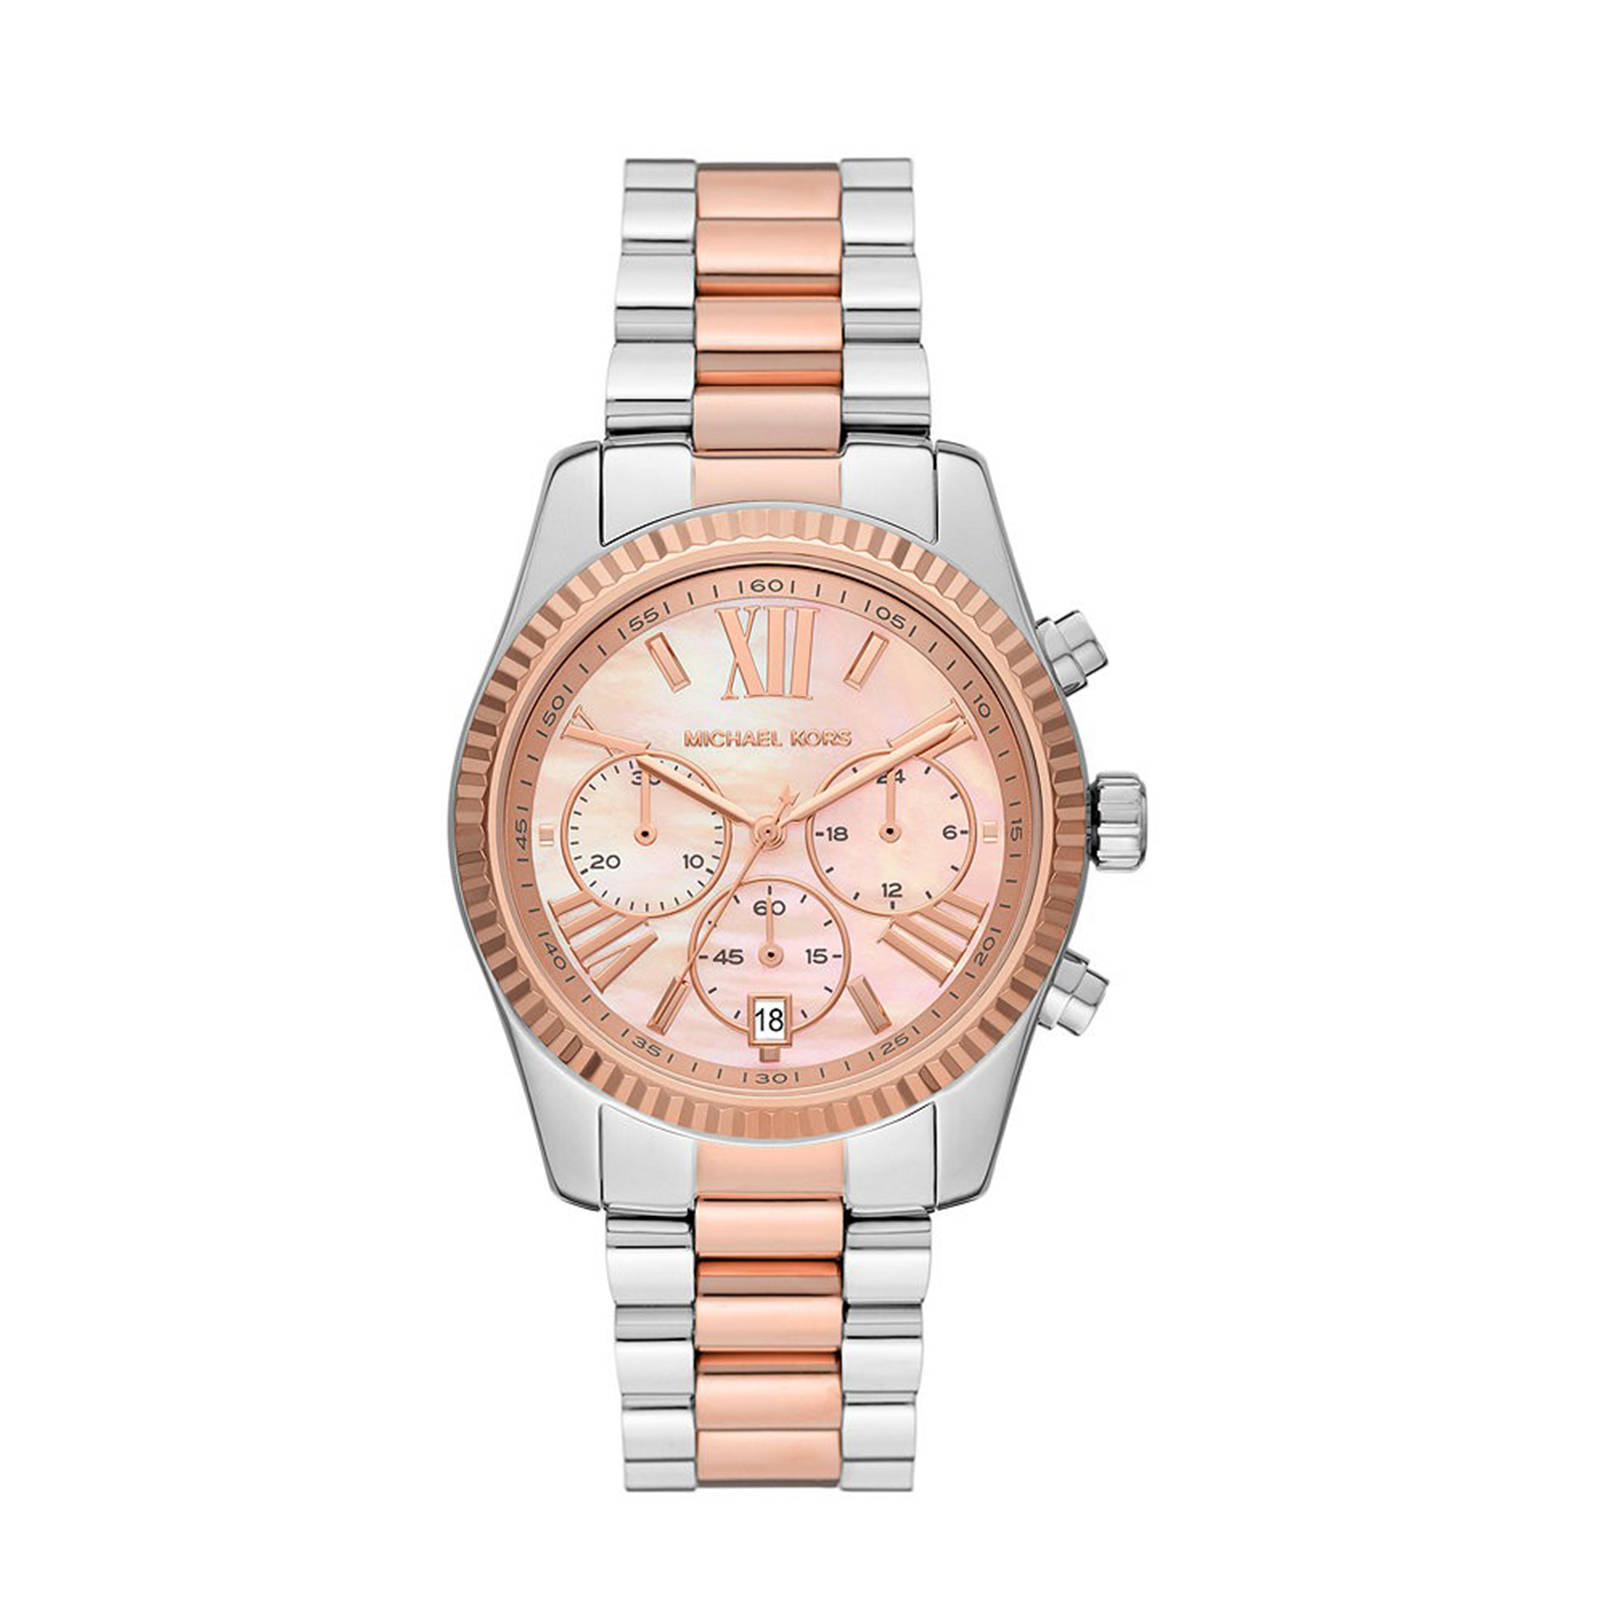 Michael Kors horloge MK7219 Lexington zilverkleurig online kopen